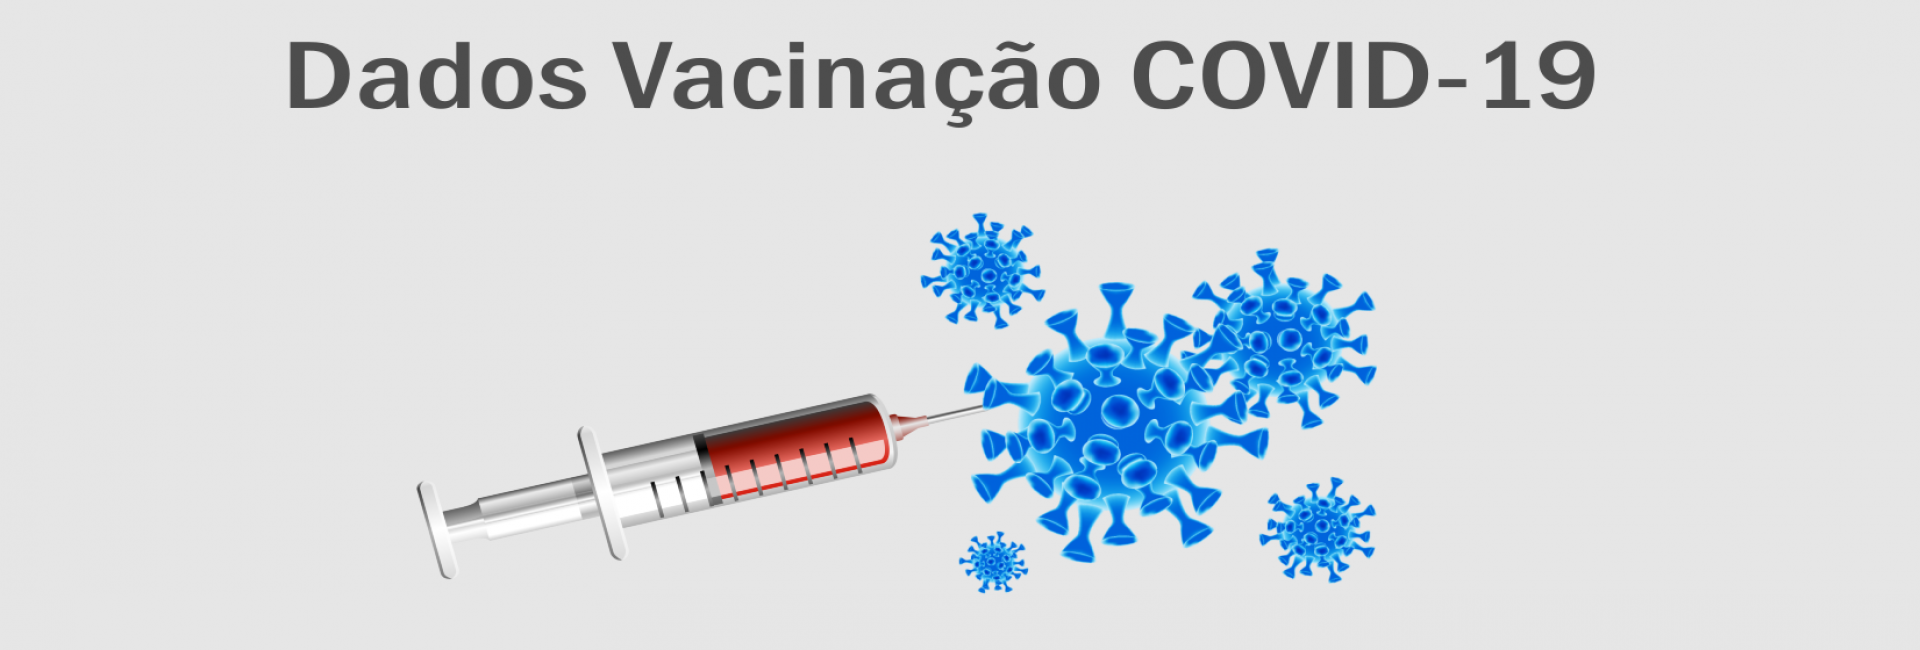 dados_vacinacao_covid